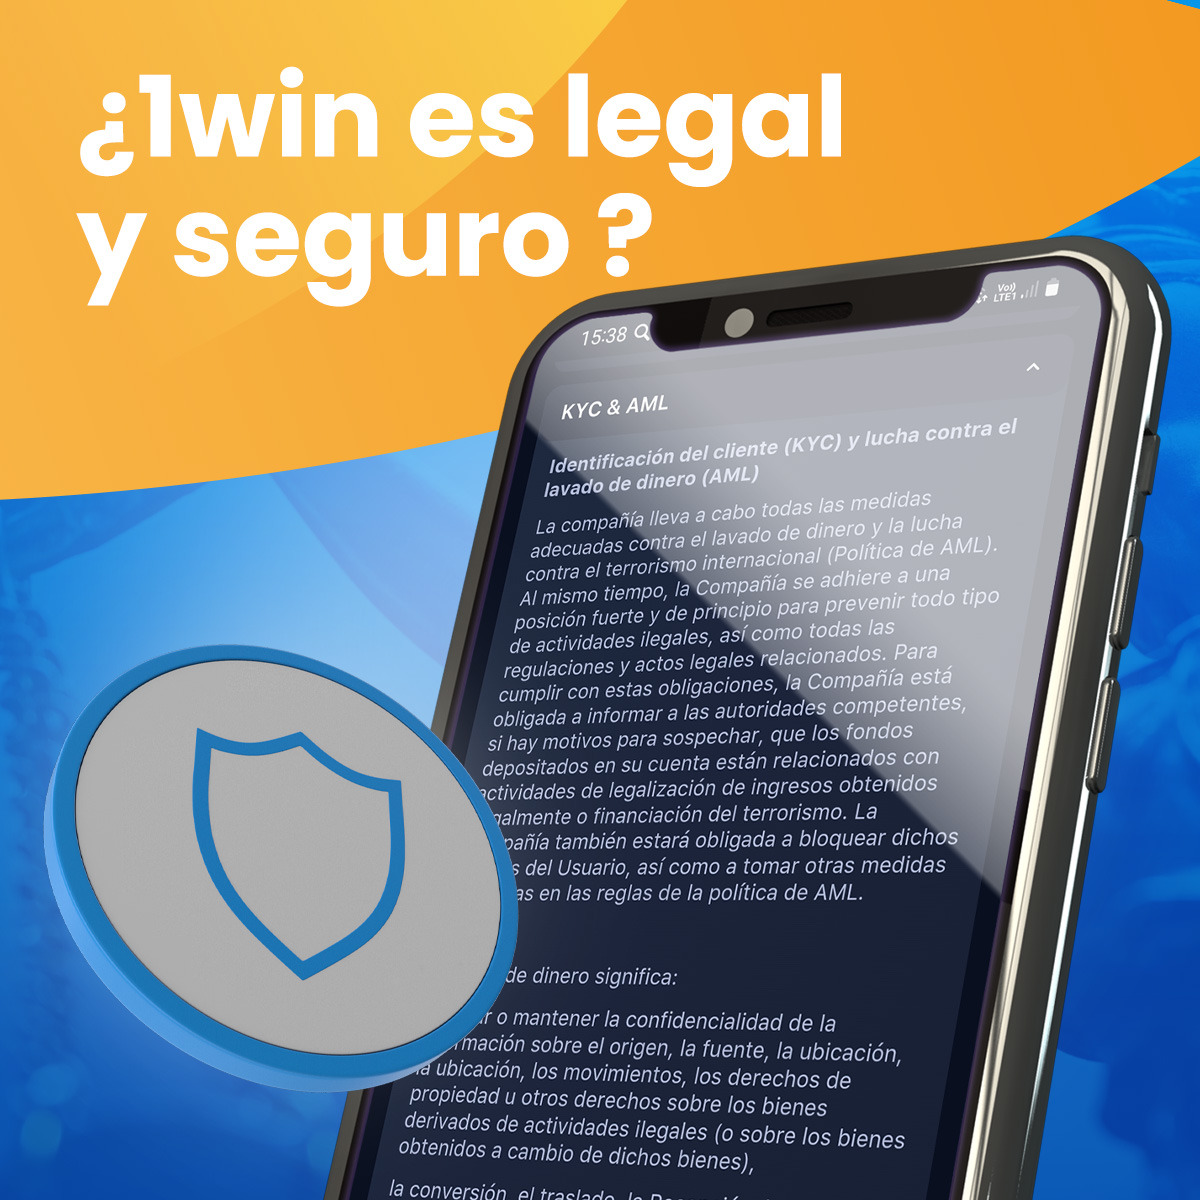 ¿Es 1win una casa de apuestas legal en Colombia?